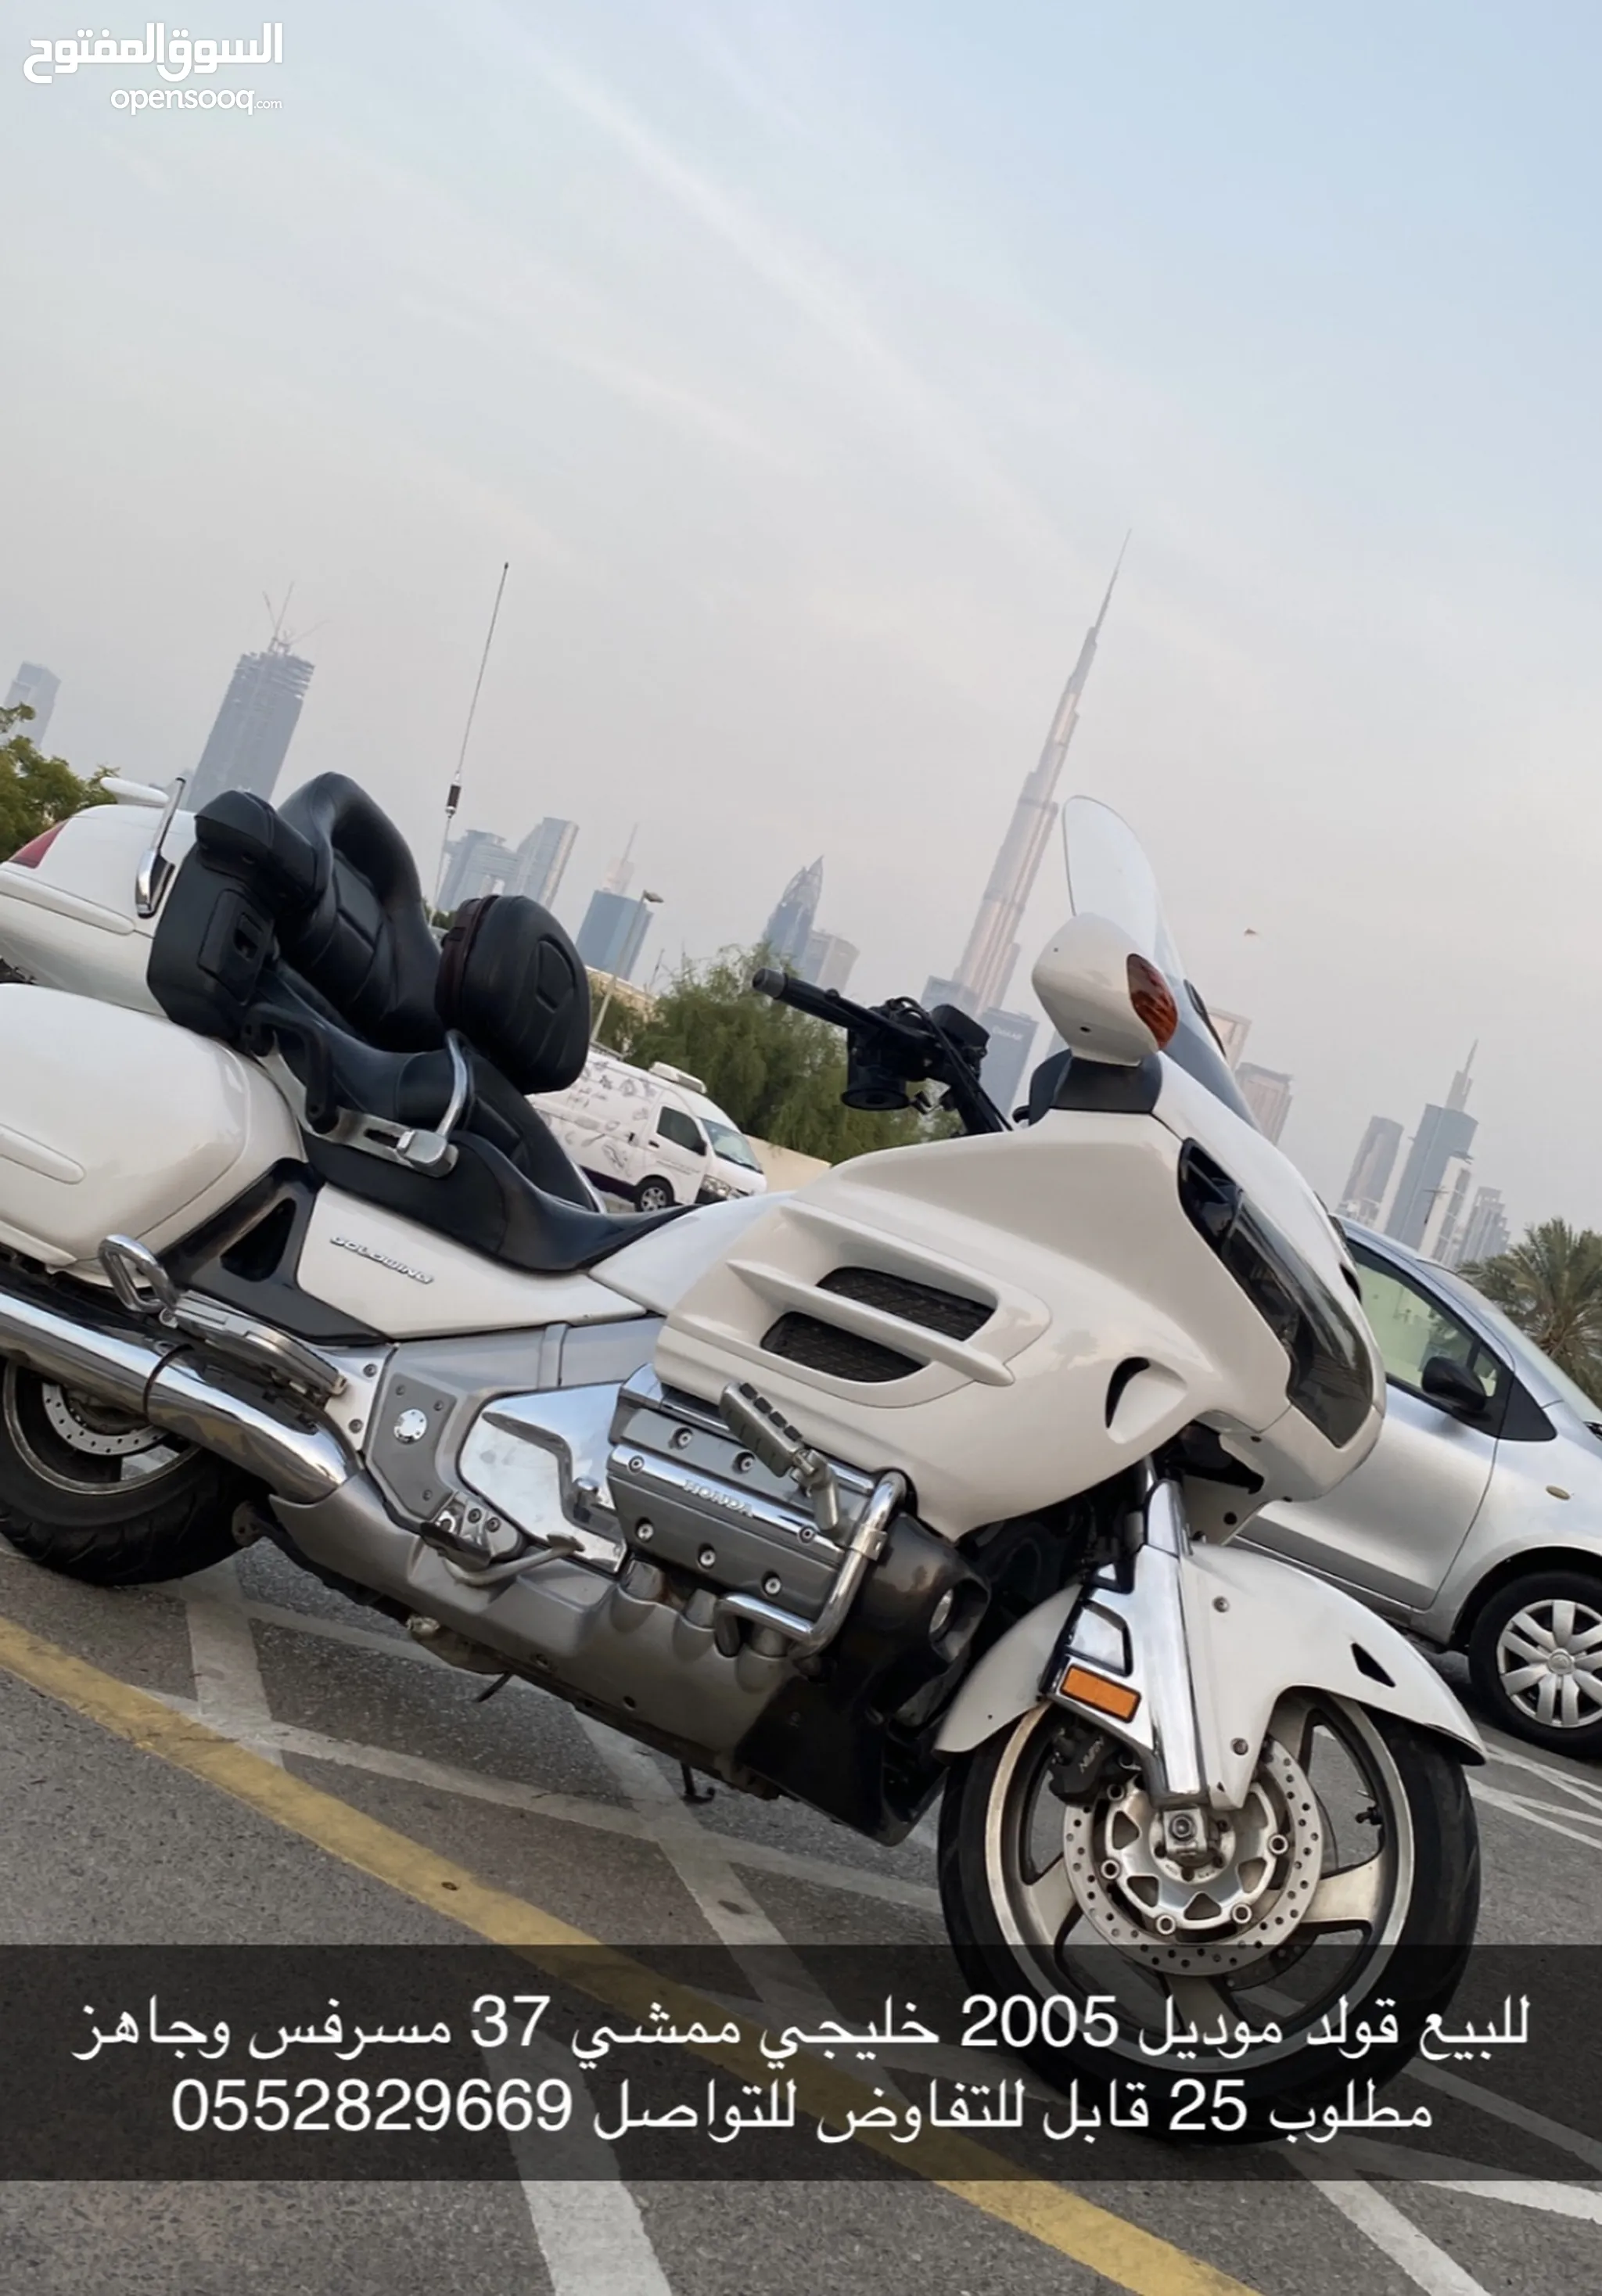 دباب هوندا أخرى للبيع في الإمارات : دراجات مستعملة وجديدة : ارخص الاسعار |  السوق المفتوح